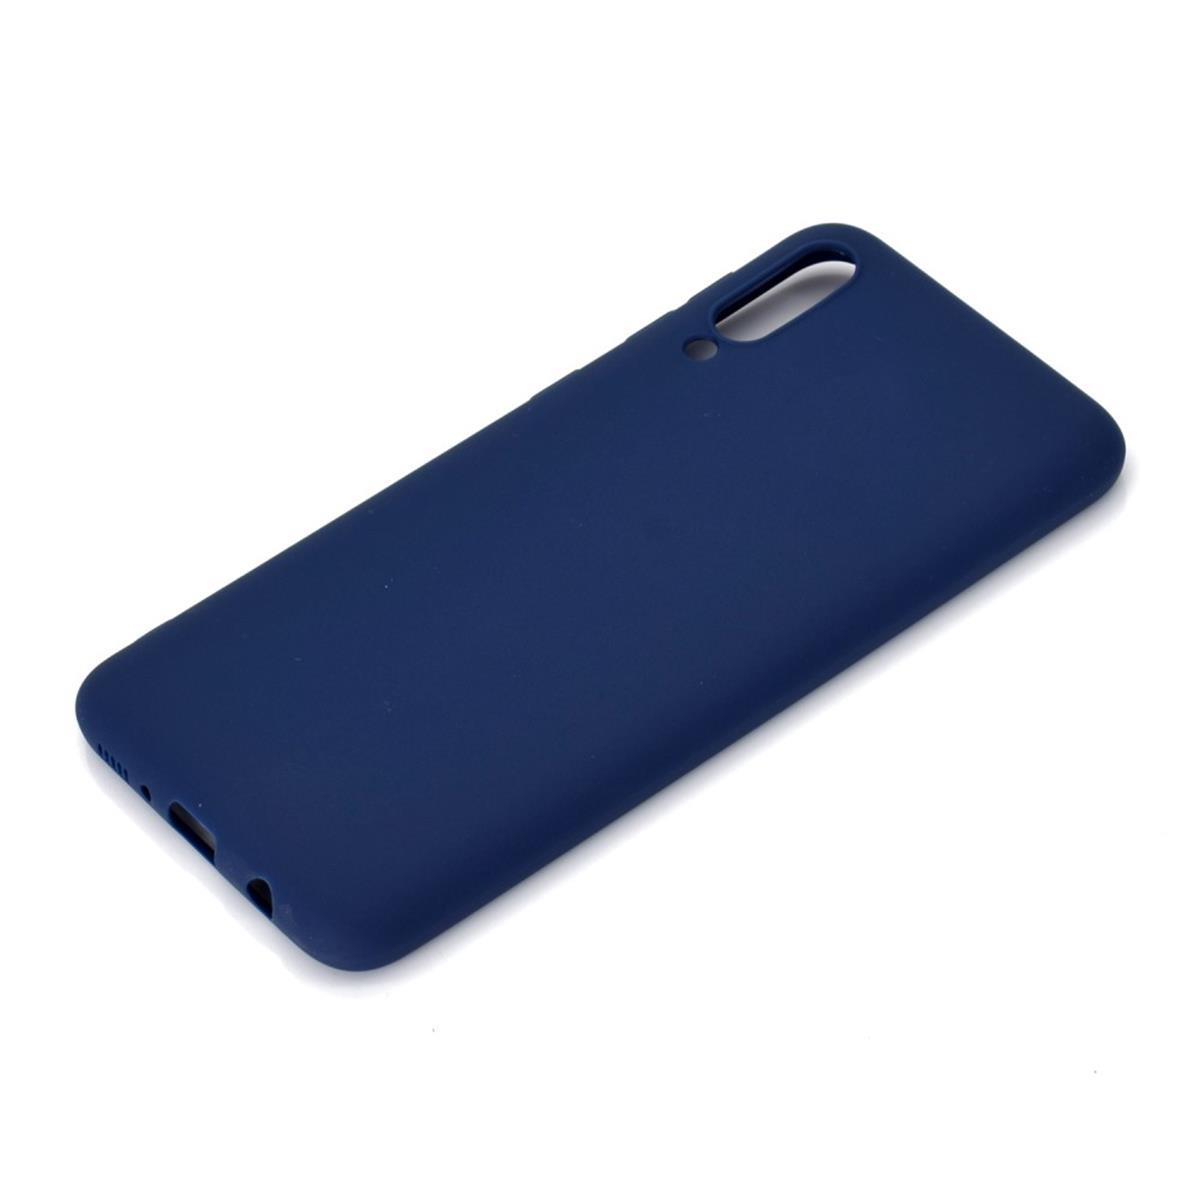 COVERKINGZ Handycase aus Silikon, Backcover, Blau Samsung, A70, Galaxy